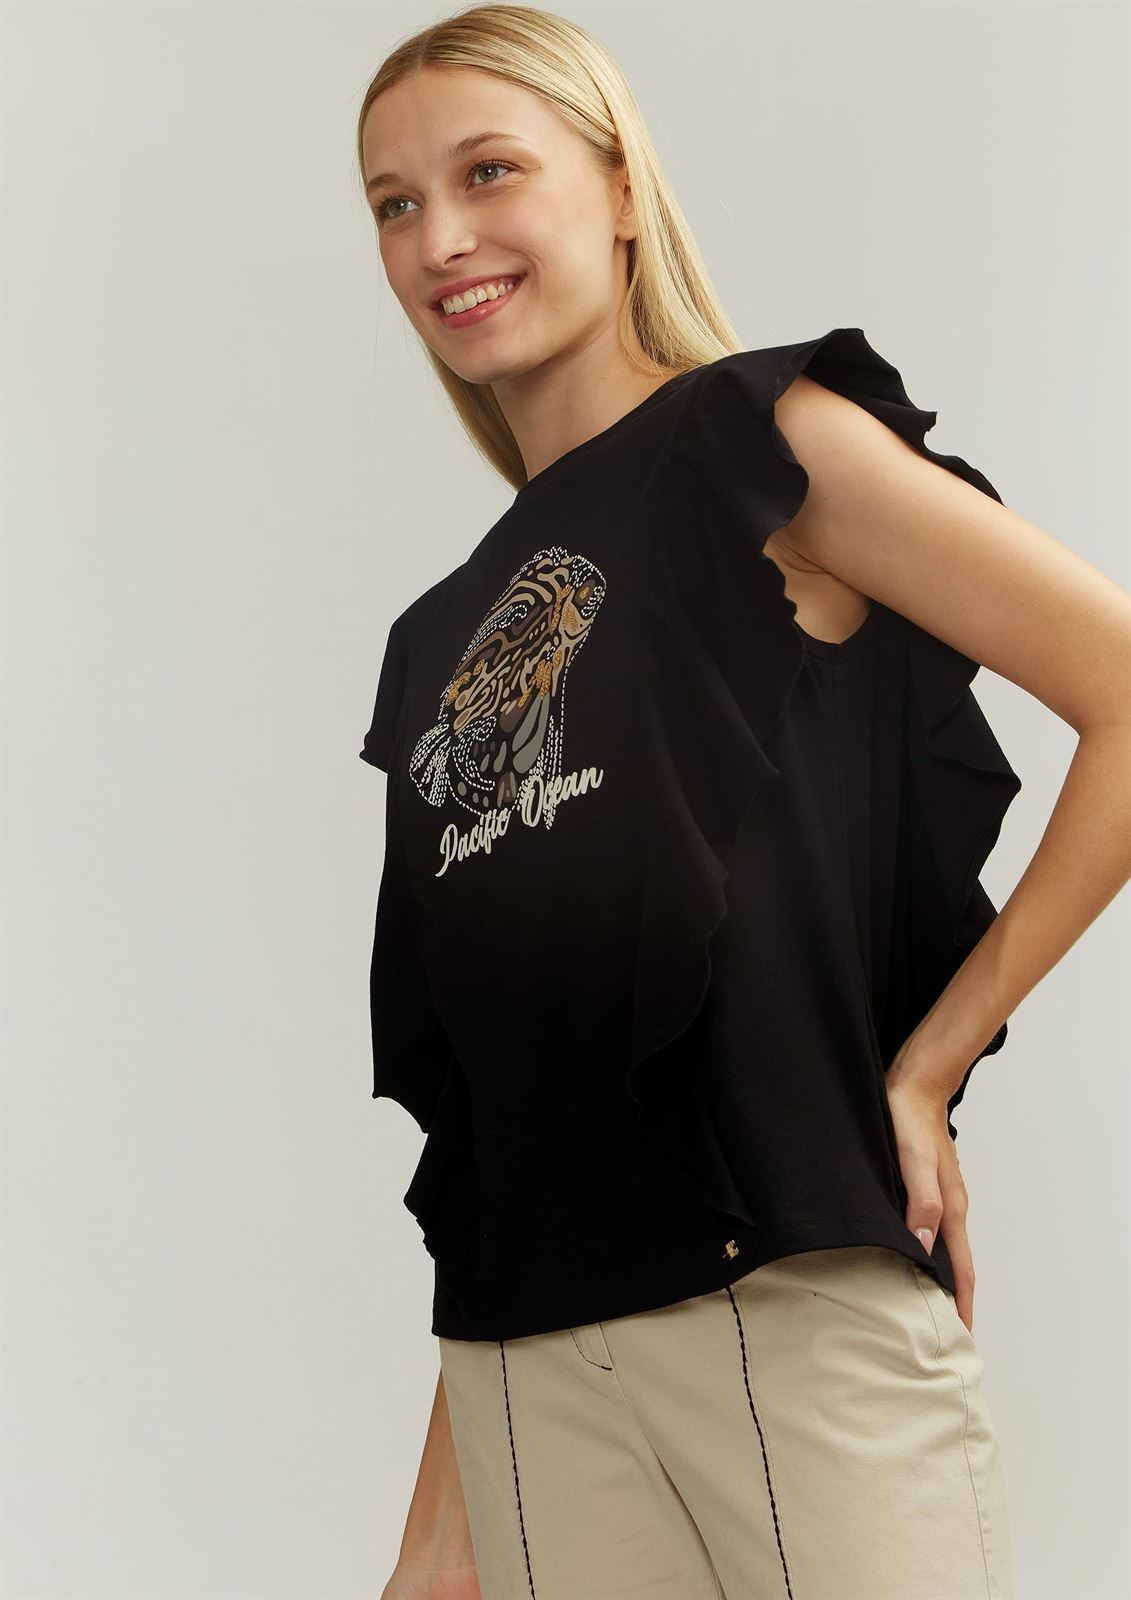 Camiseta Alba Conde volante y dibujo negra - Imagen 2